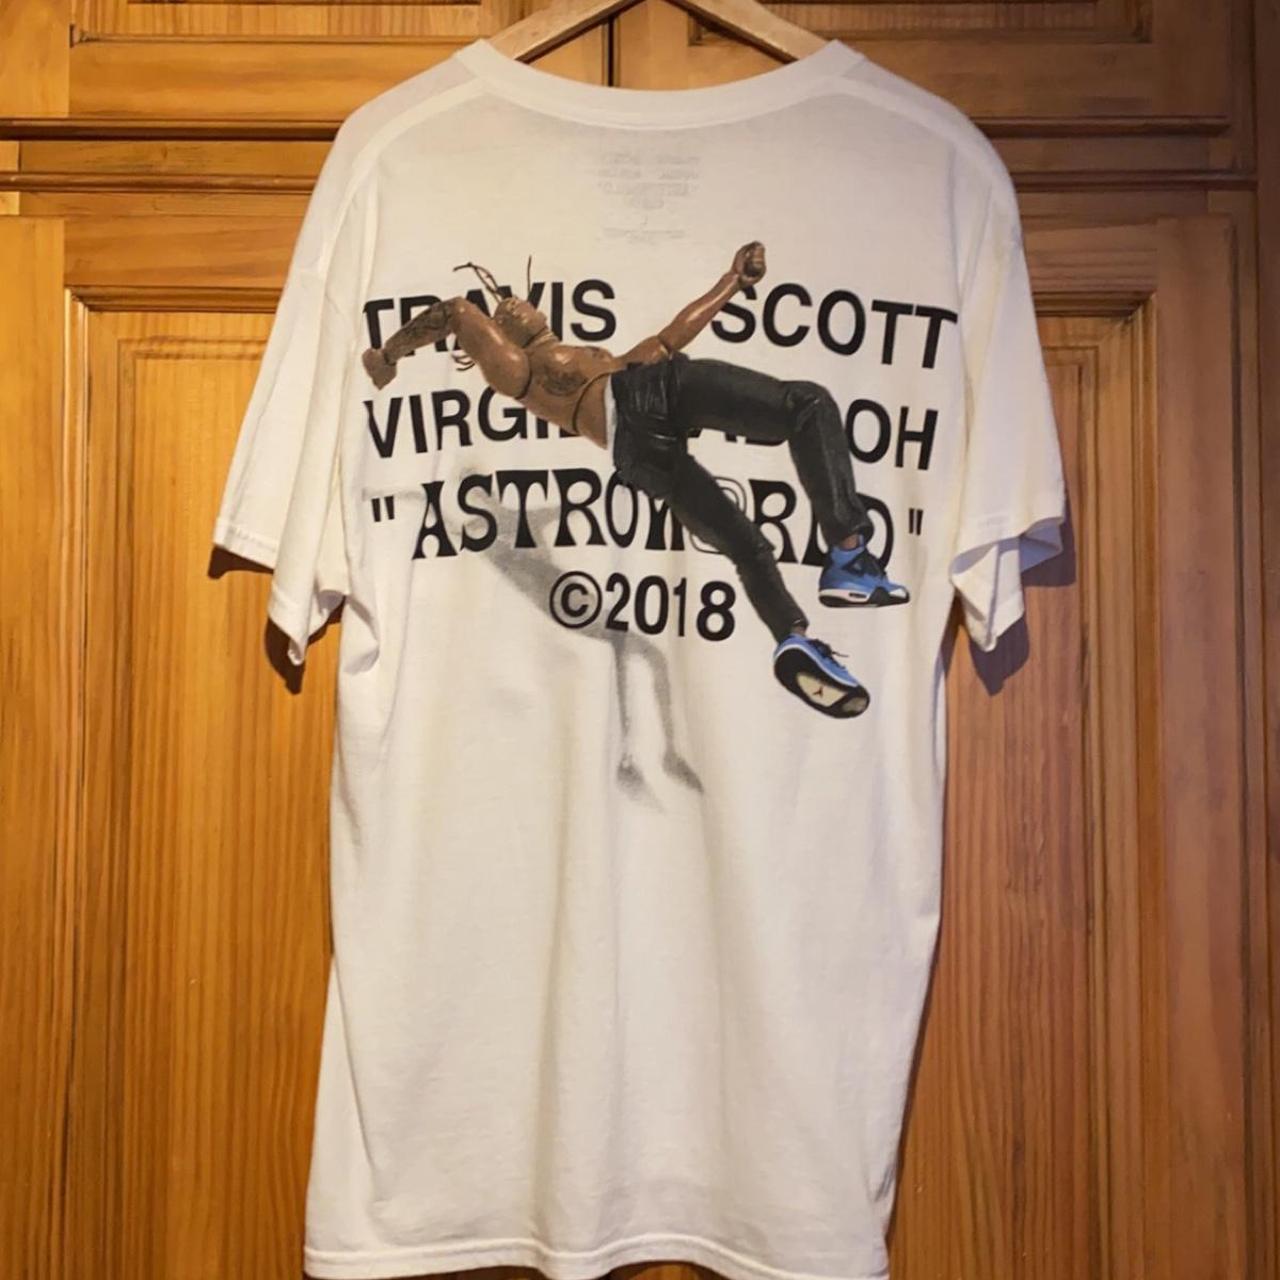 Travis Scott “Astroworld” x Off-White 2018... - Depop